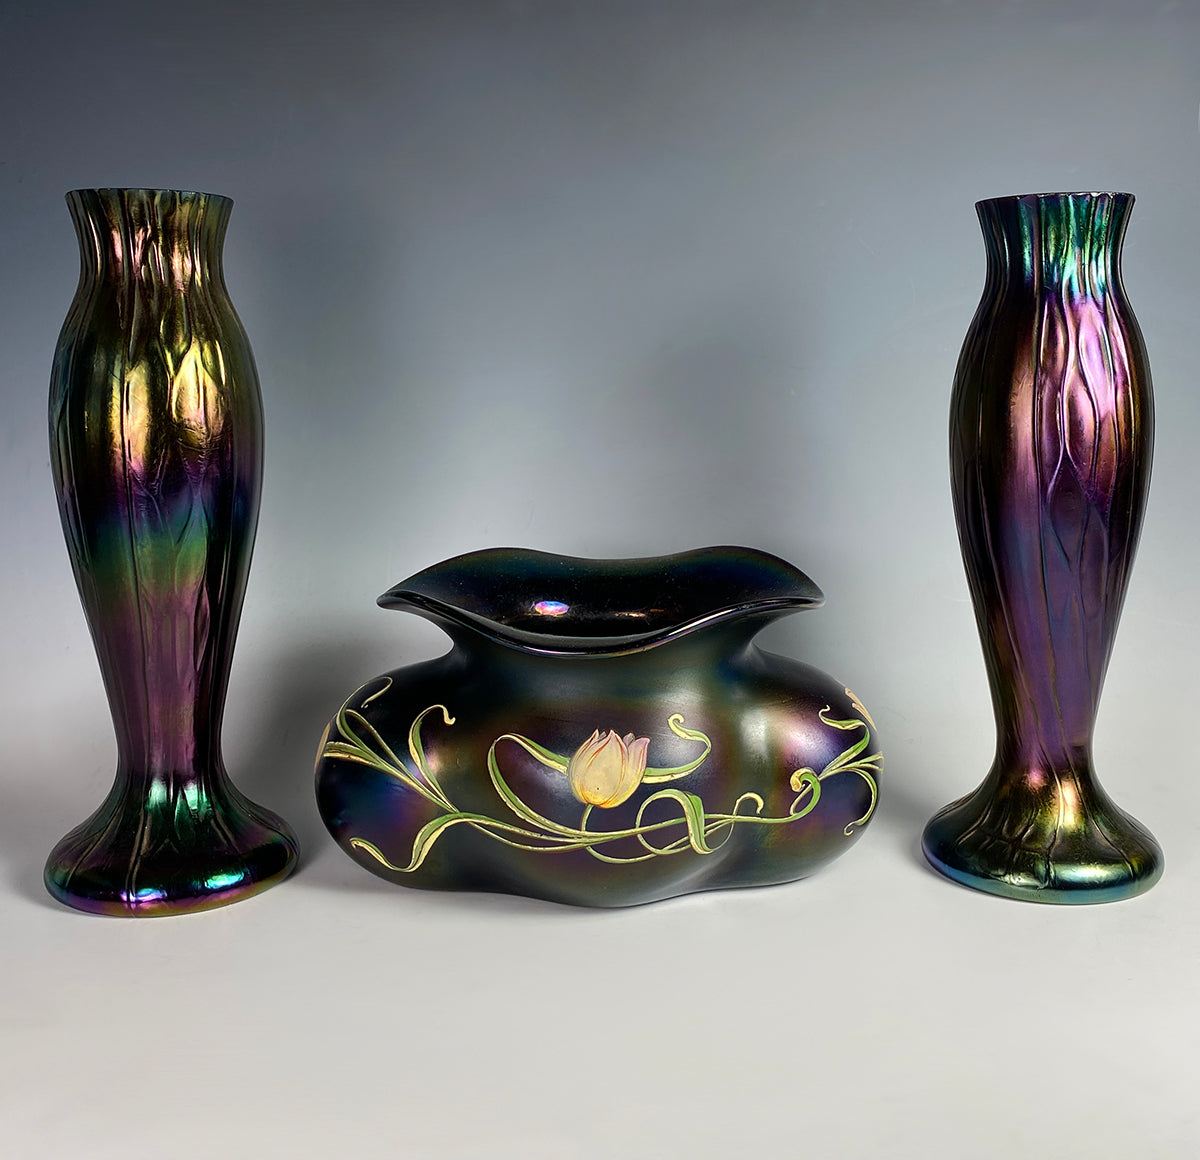 PAIR: Antique Kralik Iridescent Honeycomb Art Nouveau Bohemian Art Glass Vases (2)